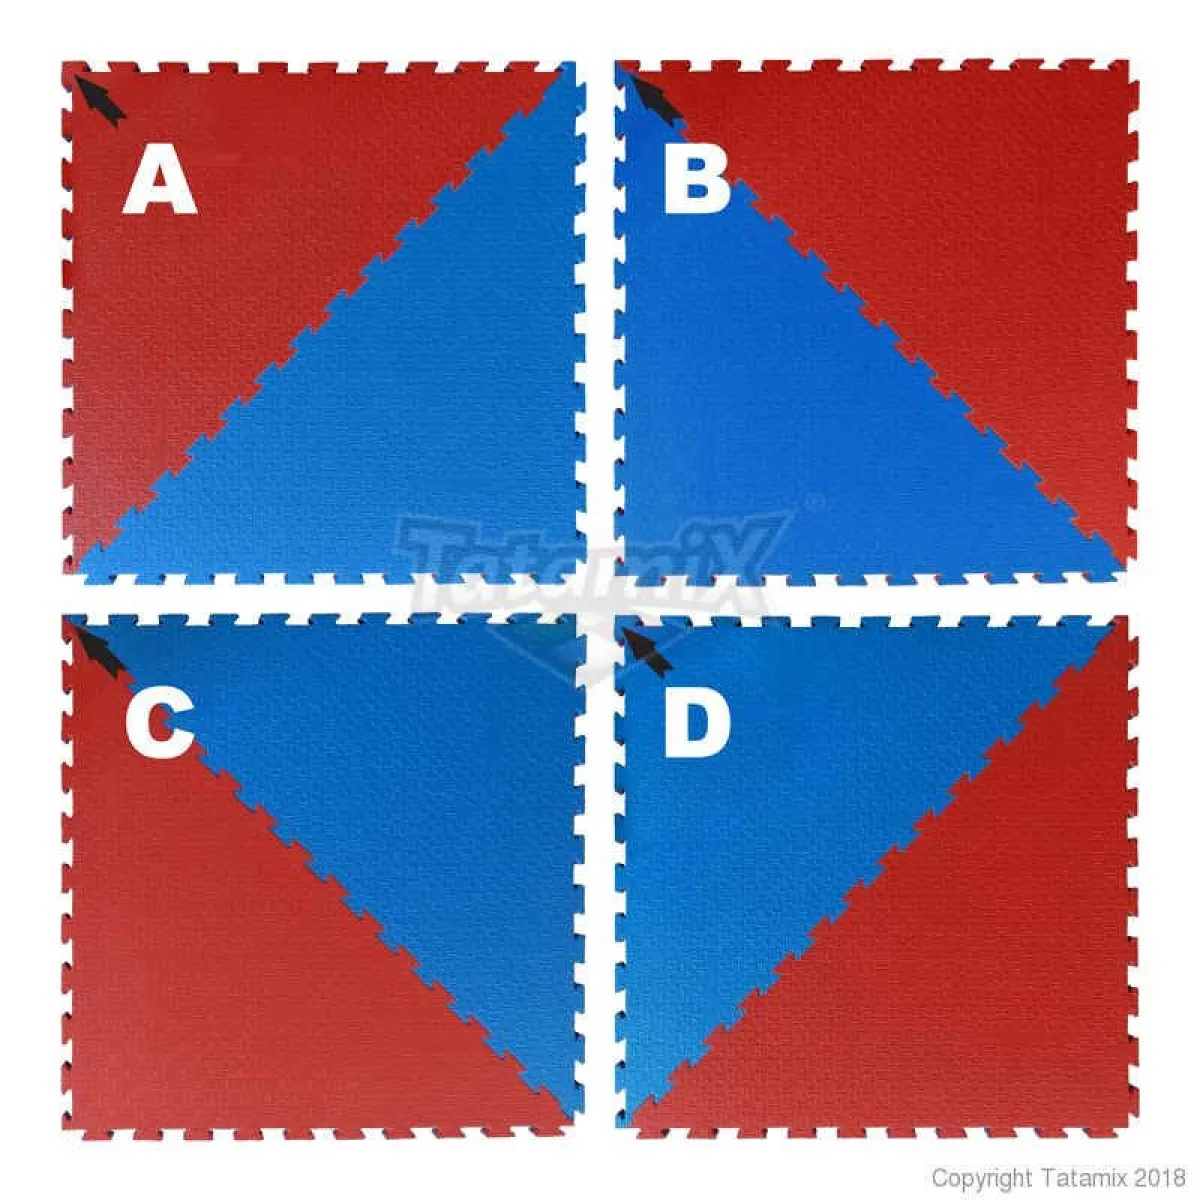 Taekwondo mat rood/blauwe achthoek